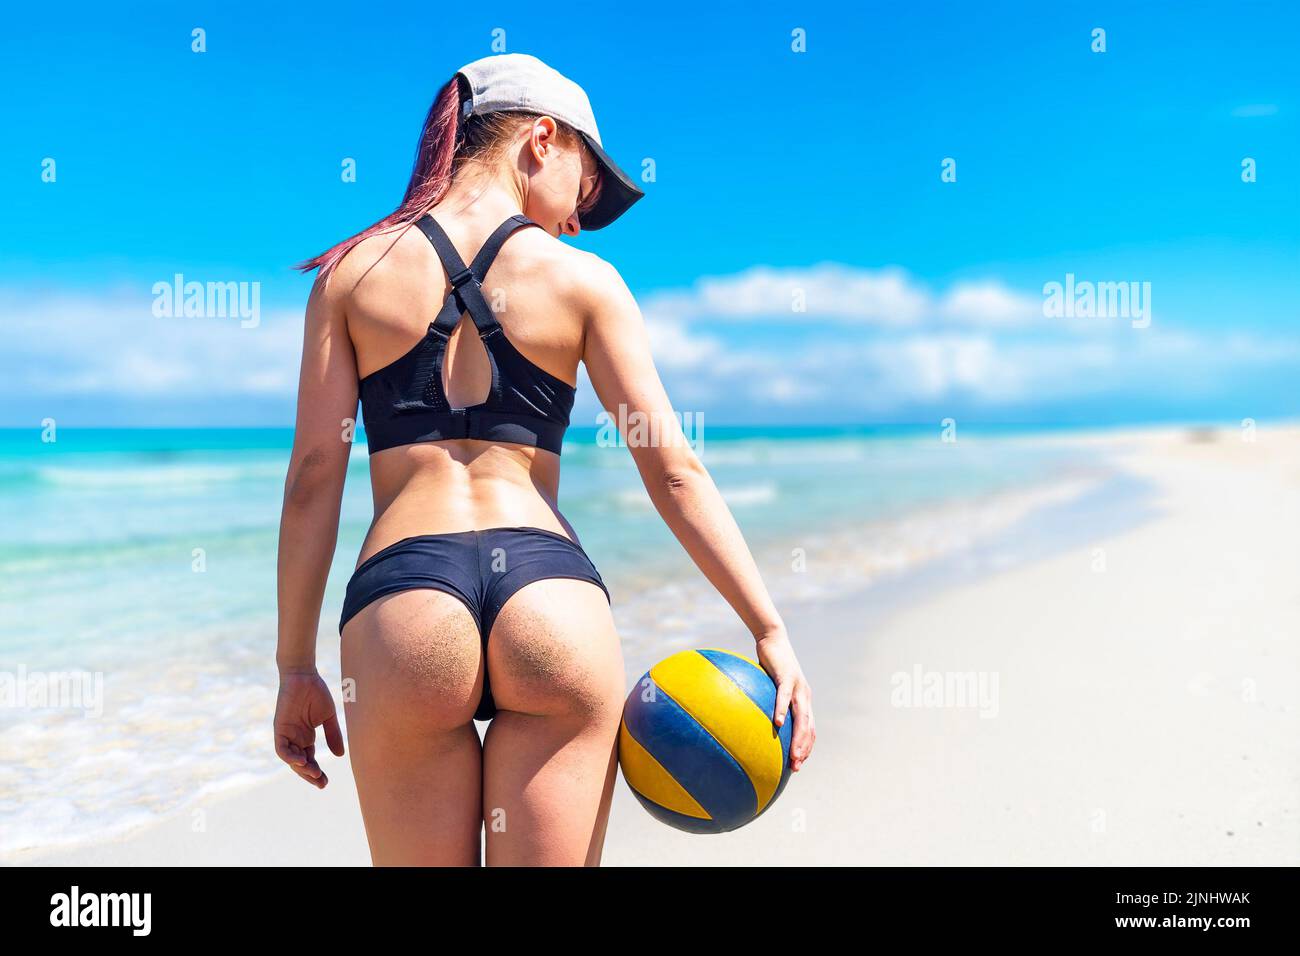 Joven atleta en la playa en verano con una pelota de voleibol contra el fondo del hermoso mar Caribe Foto de stock